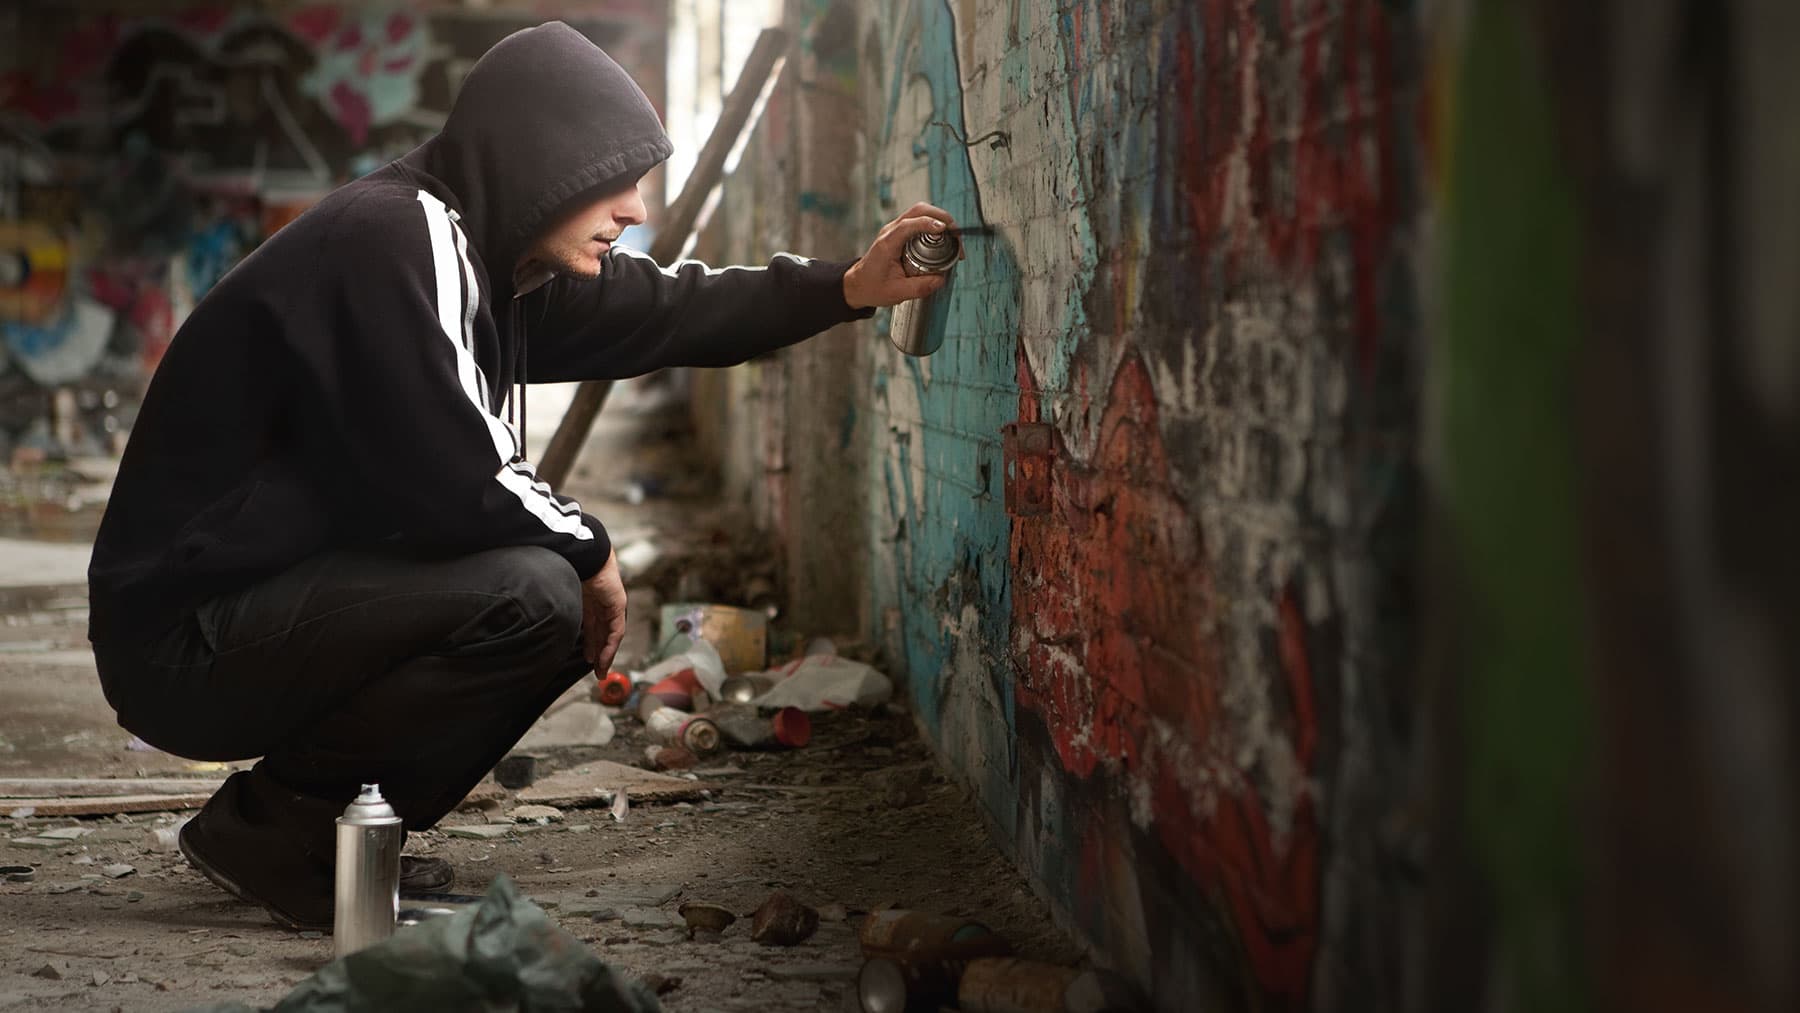 Jongen spuit gehurkt graffiti op een bakstenen muur.